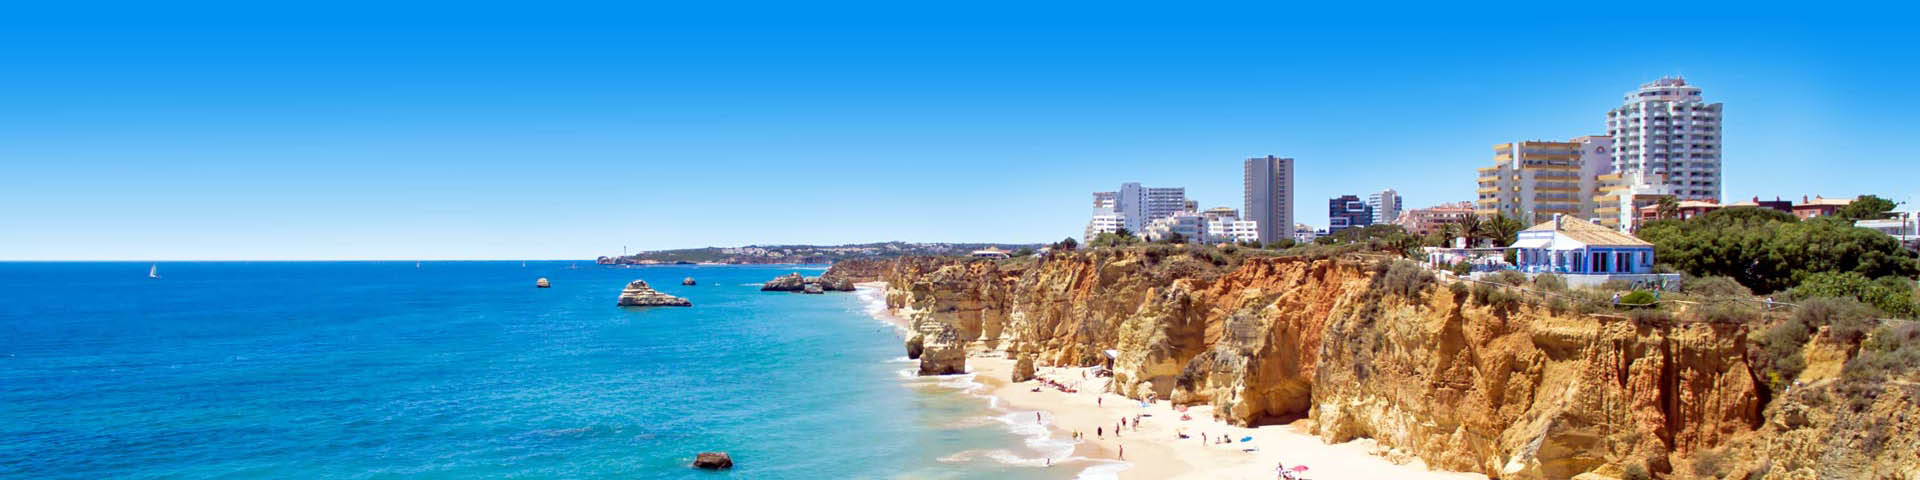 Prachtige Panorama van een Portugees strand met azuurblauwe zee, met bergen en stad in de verte. 